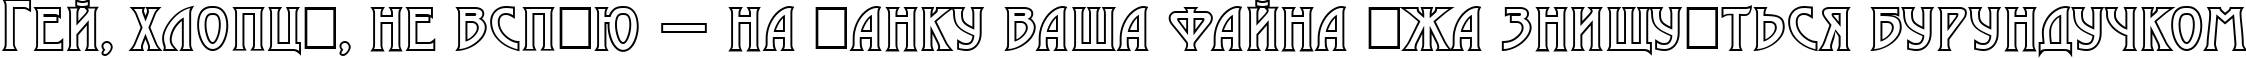 Пример написания шрифтом a_ModernoCapsOtl текста на украинском